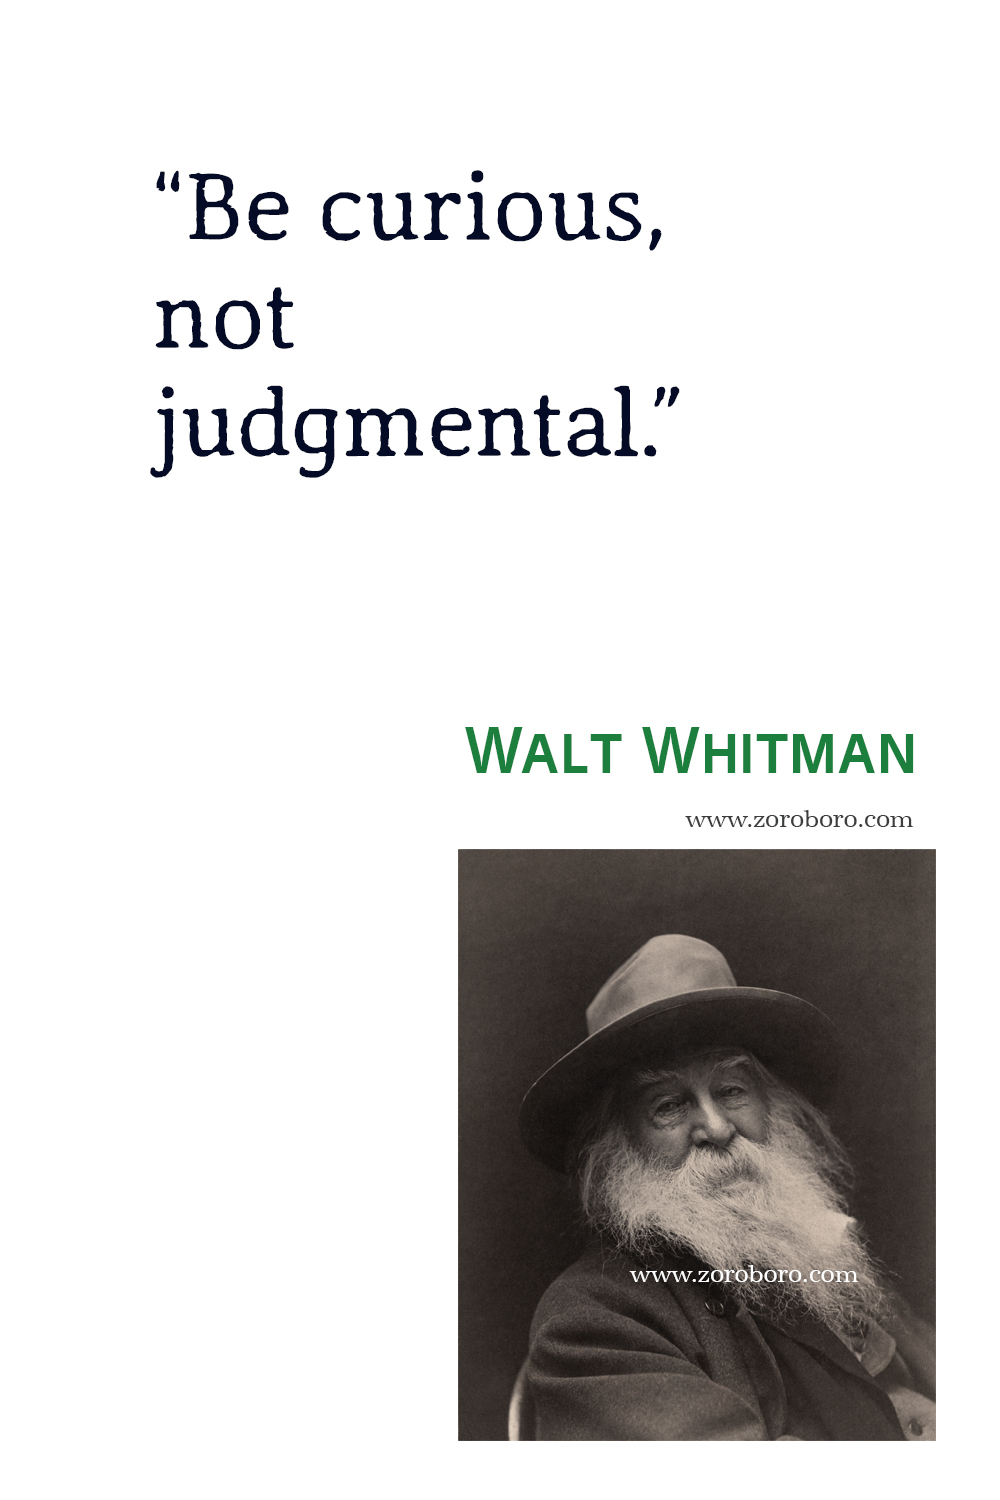 Walt Whitman Quotes, Poet, Poetry, Walt Whitman Poems, Walt Whitman Books Quotes, Walt Whitman : Selected Poems, Walt Whitman Song of myself & Leaves of grass.